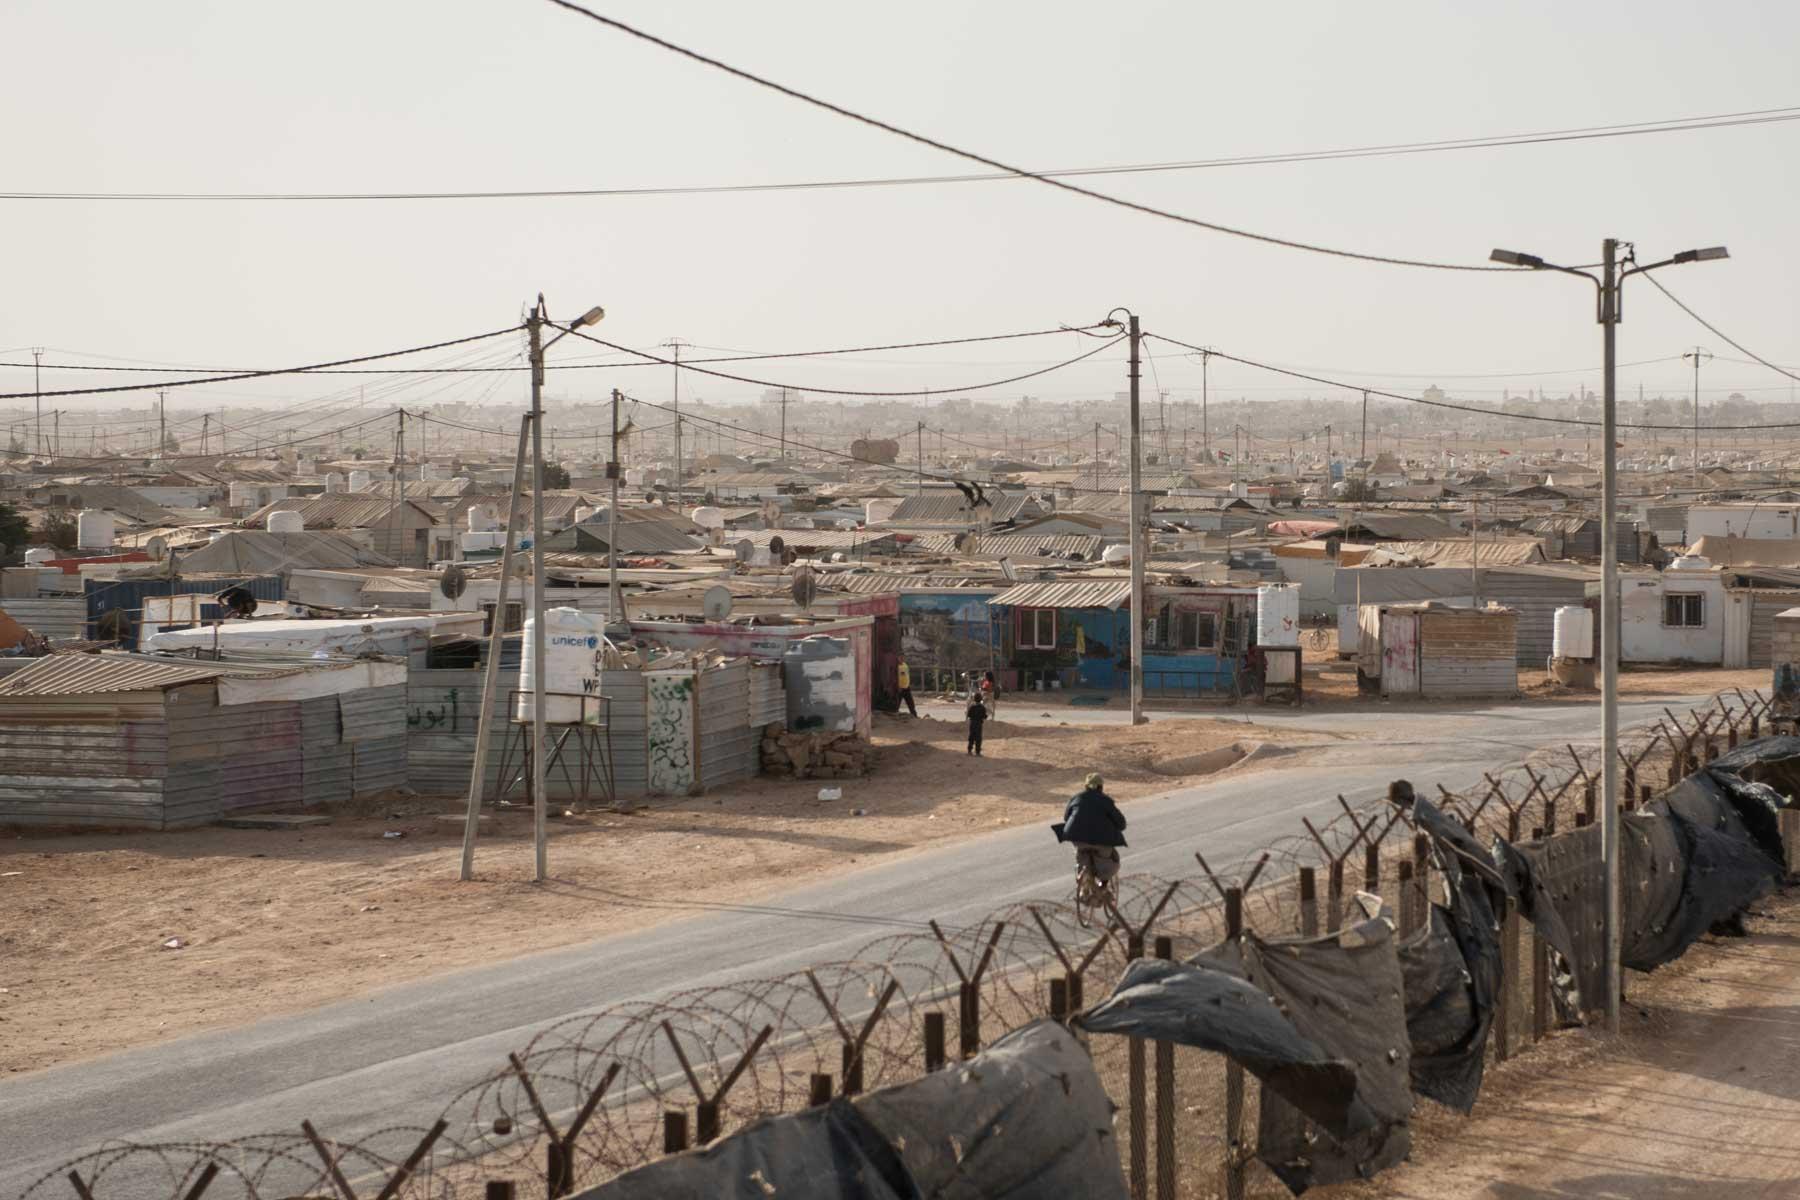 Mit 80.000 Menschen ist Za‘atari das größte Flüchtlingslager in Jordanien. Es verfügt über Geschäfte und Infrastrukturen wie eine Kleinstadt. Foto: DCA/Christian Jepsen